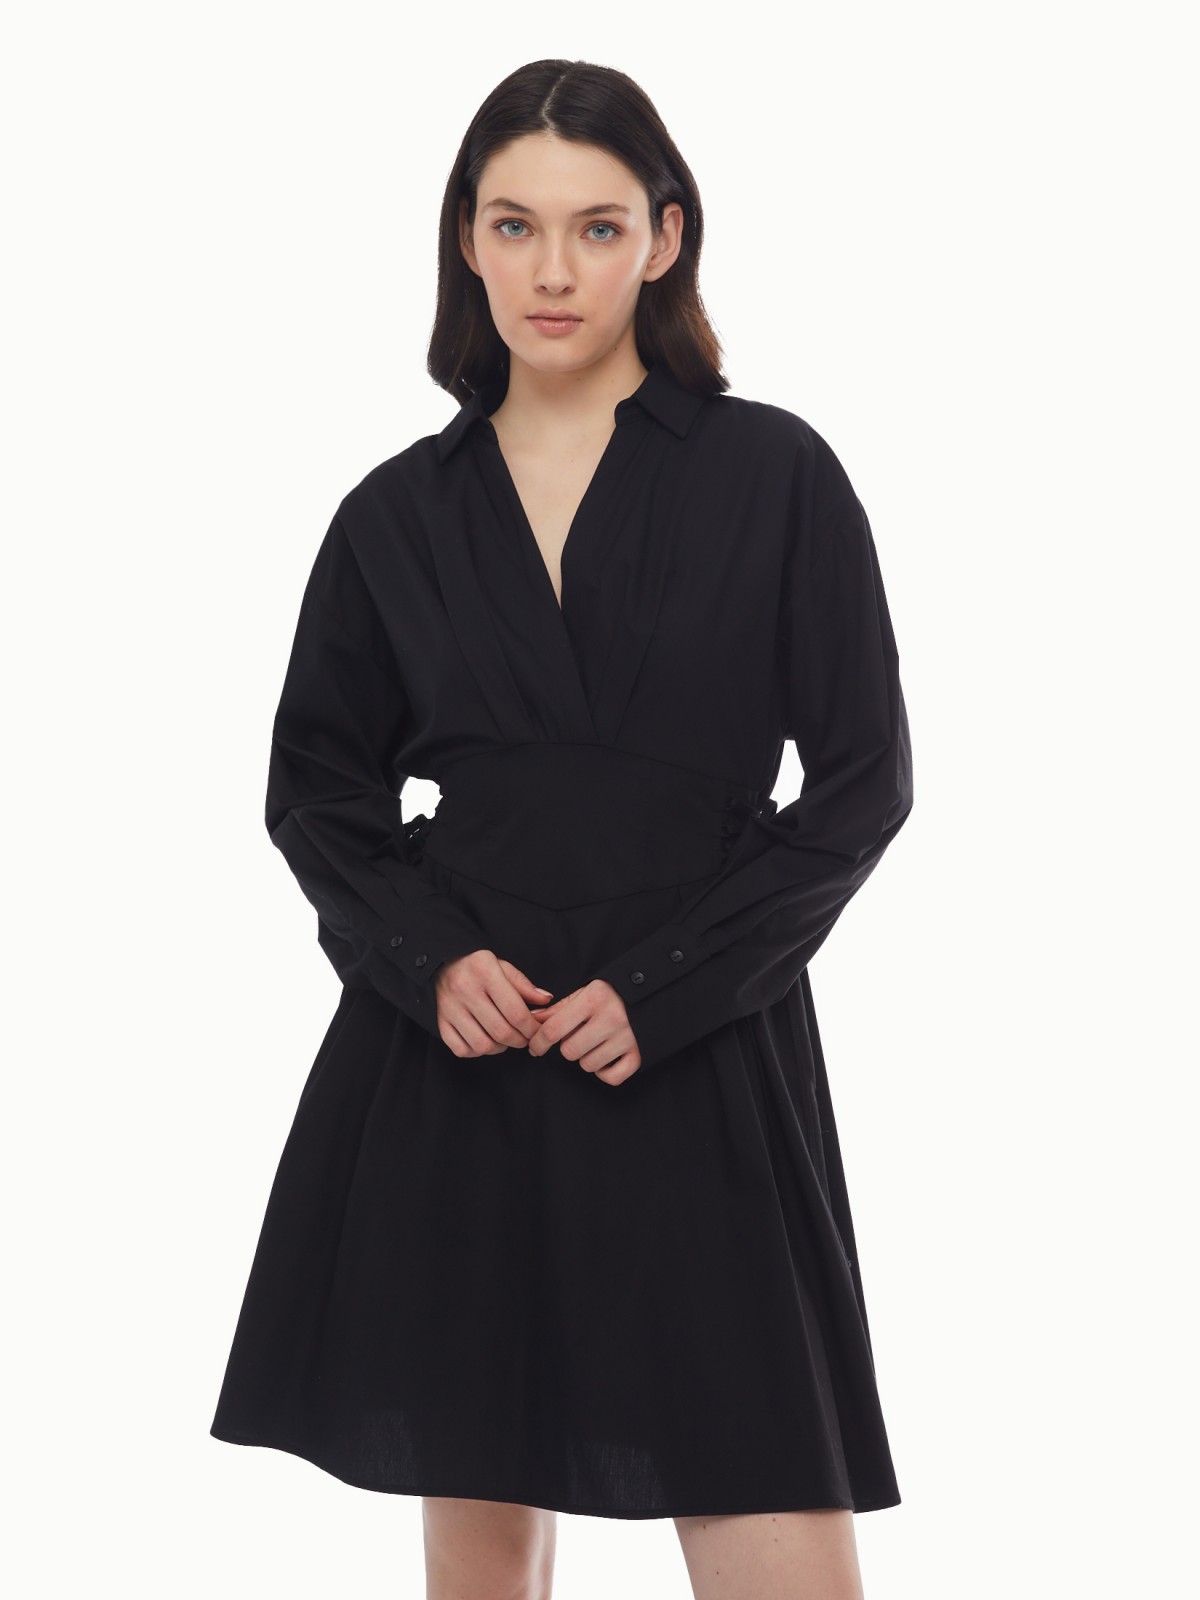 Платье длины мини из хлопка со шнуровкой на талии zolla 024138239291, цвет черный, размер XS